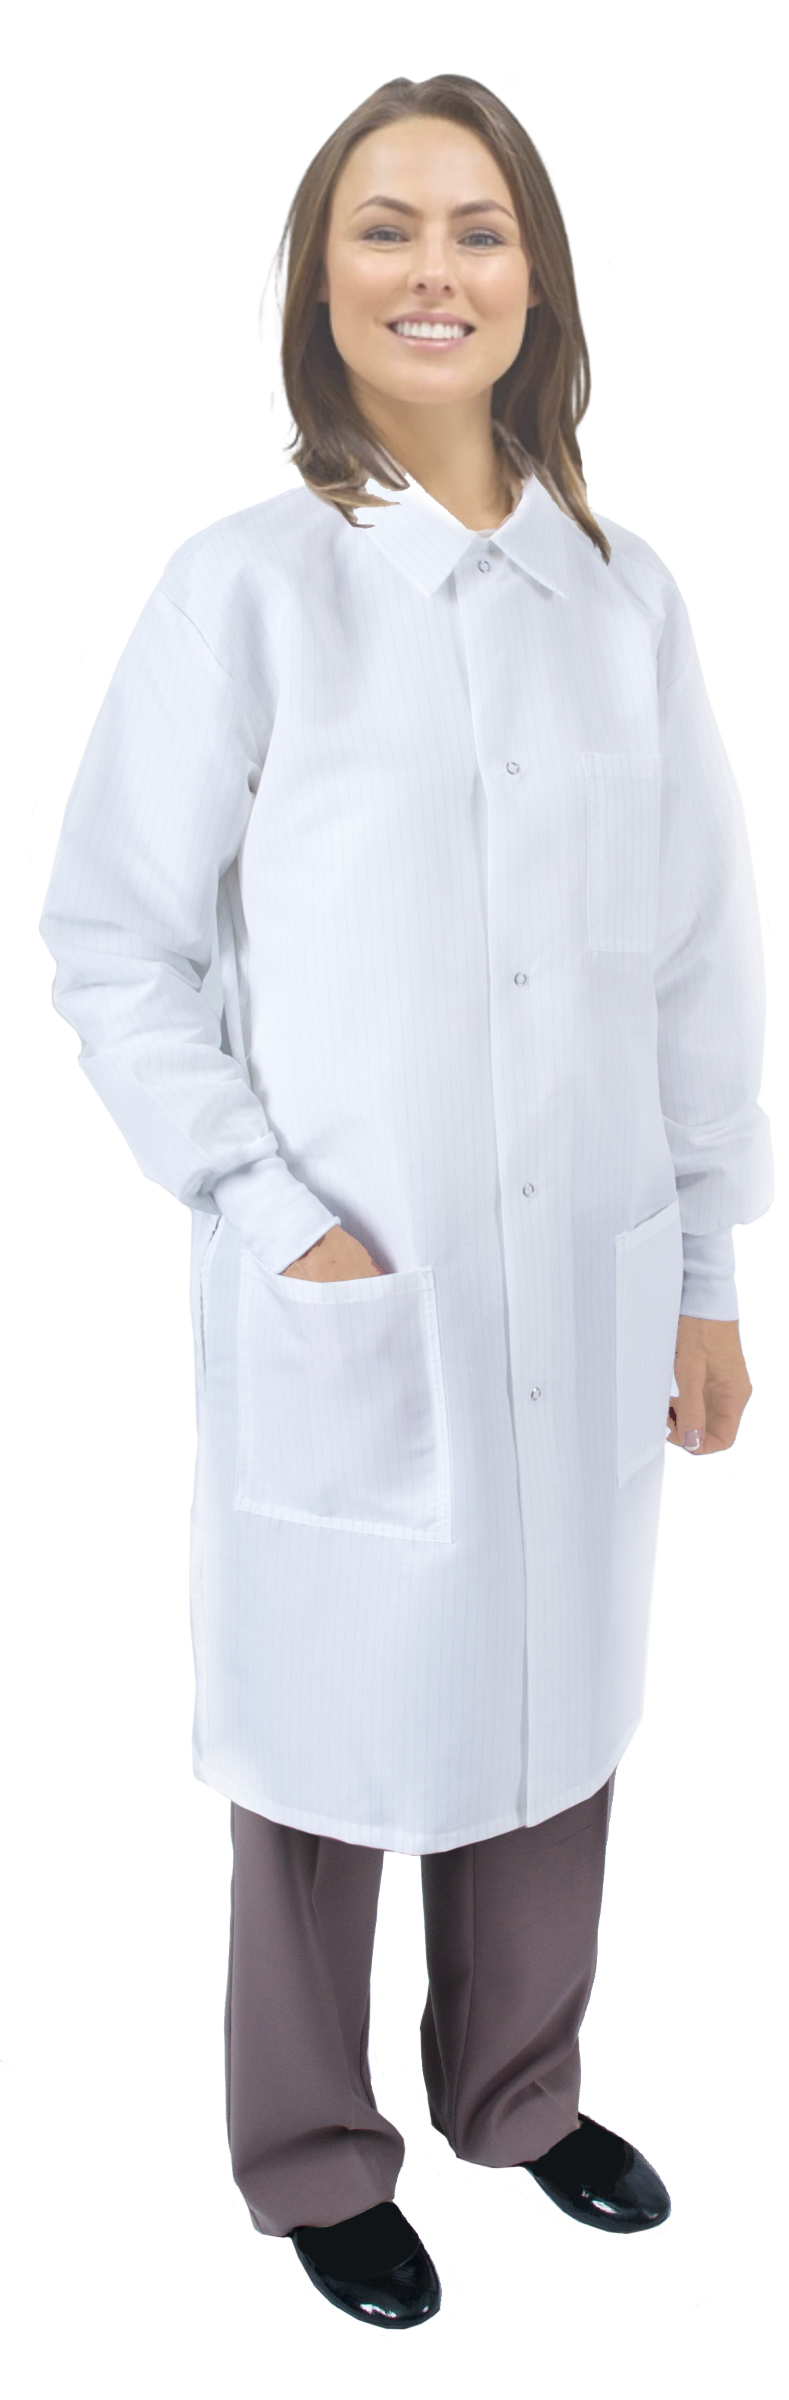 Nurses Unite - Safe Staffing DryFit Polyester T-Shirt